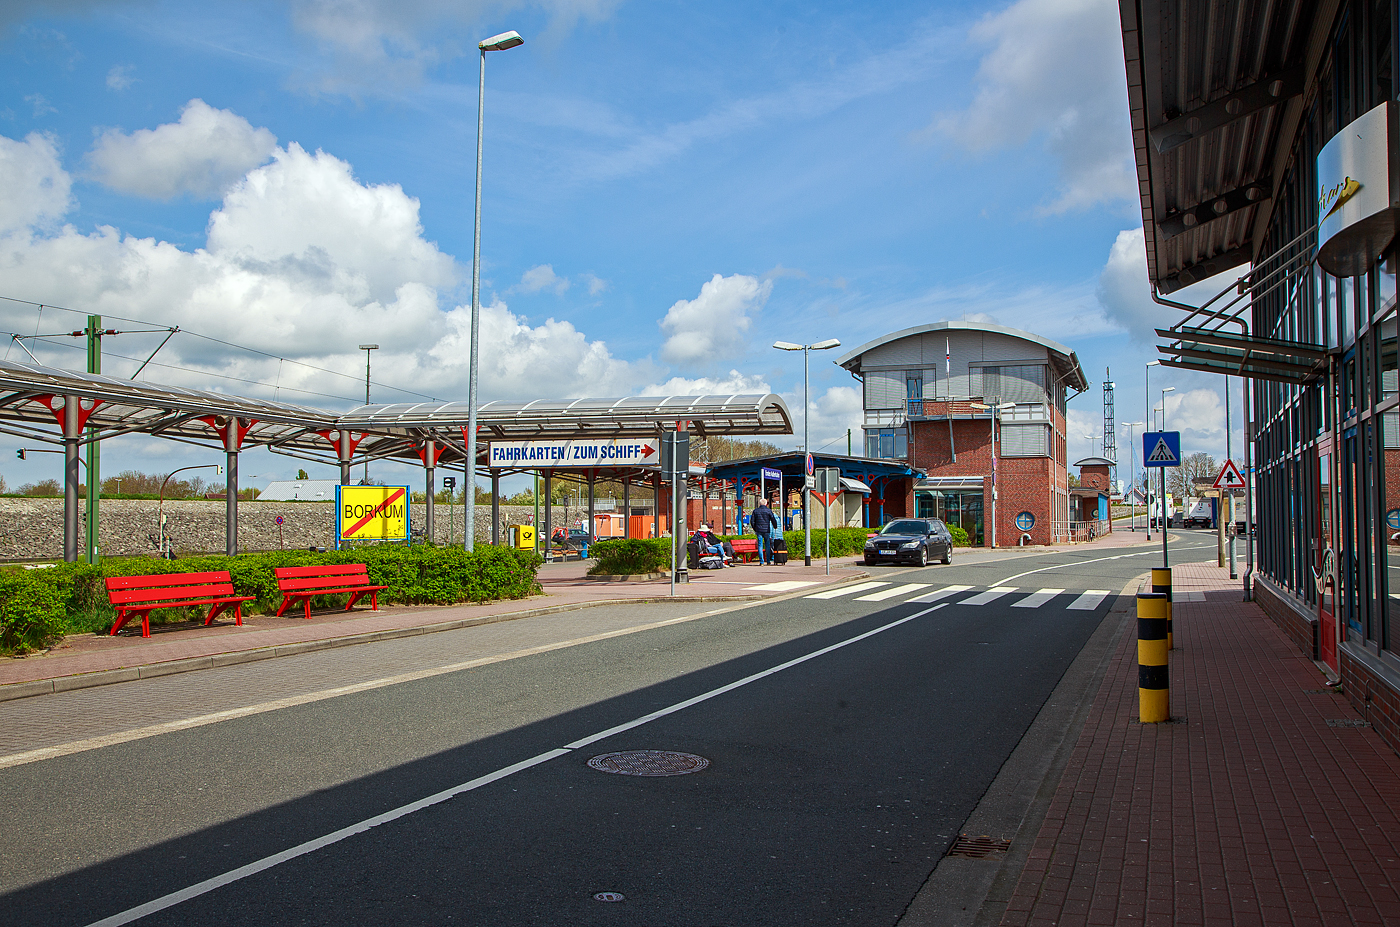 Der Bahnhof Emden-Außenhafen am 01.05.2022.
Der Bahnhof Emden Außenhafen ist ein Hafenbahnhof in der ostfriesischen Stadt Emden (Niedersachsen).Es gibt so einen direkten Anschluss an die Fähre der AG Ems nach Borkum. Er dient als Zubringer für die Fähre nach Borkum und befindet sich daher in unmittelbarer Nähe zum Borkumkai des Emder Hafens. Eine Reise zur ostfriesischen Nordseeinsel Borkum, mit den „normalen“ Fähren, kann man mit einem Bahnticket durchbuchen, aber nicht den Katamaran (Schnellfähre).

Der Bahnhof verfügt über ein Bahnsteiggleis, dazu mehrere Rangier- und Abstellgleise sowie Anschlussgleise der Niedersachsen Ports GmbH & Co KG. 

Der Hafenbahnhof ist über eine eingleisige Nebenbahn mit dem Emder Hauptbahnhof verbunden. Alle von Leer kommenden Züge zum Hafenbahnhof müssen im Hauptbahnhof einen Fahrtrichtungswechsel vornehmen. Im Juni 2006 wurden umfangreiche Modernisierungsmaßnahmen des Bahnhofs und der Strecke abgeschlossen, seitdem ist die Strecke auch elektrifiziert.
